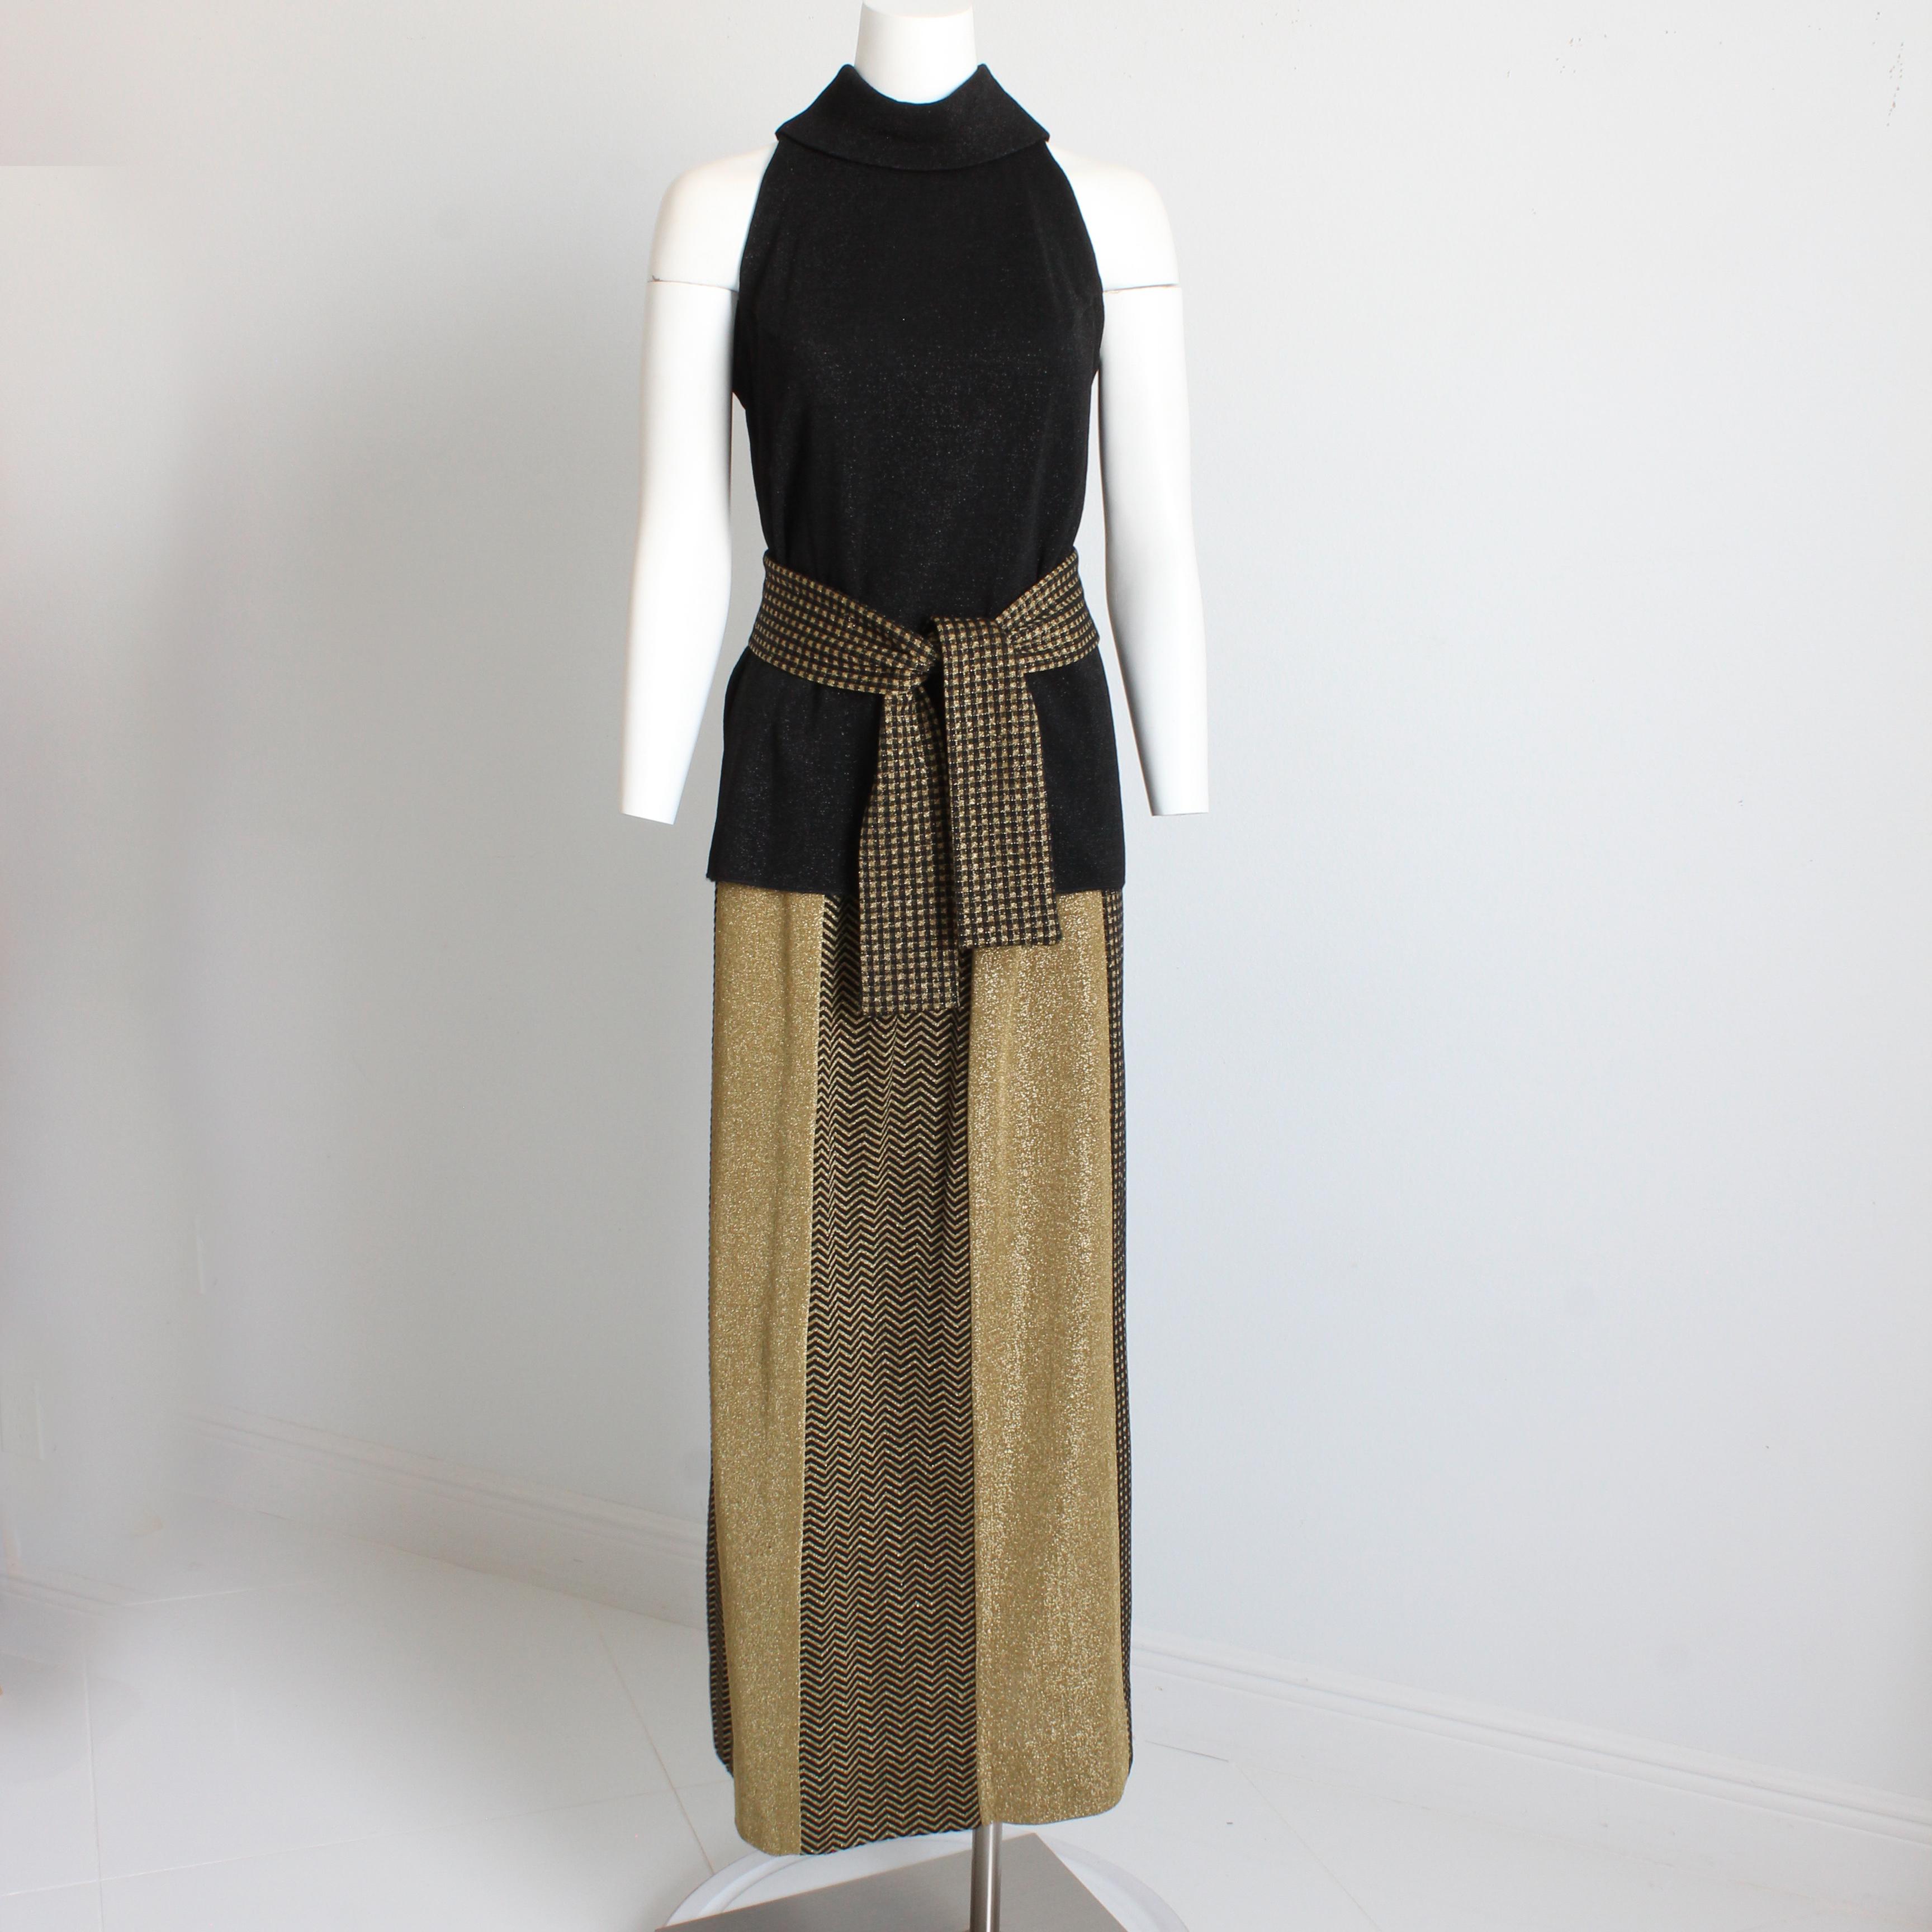 Trueing vintage 3pc knit top, sash and skirt set, made by designer Rudi Gernreich, très probablement fabriqué dans les années 1970. Gernreich était connu pour ses tricots - et a dessiné pour Harmon Knits de la fin des années 50 jusqu'aux années 70. 